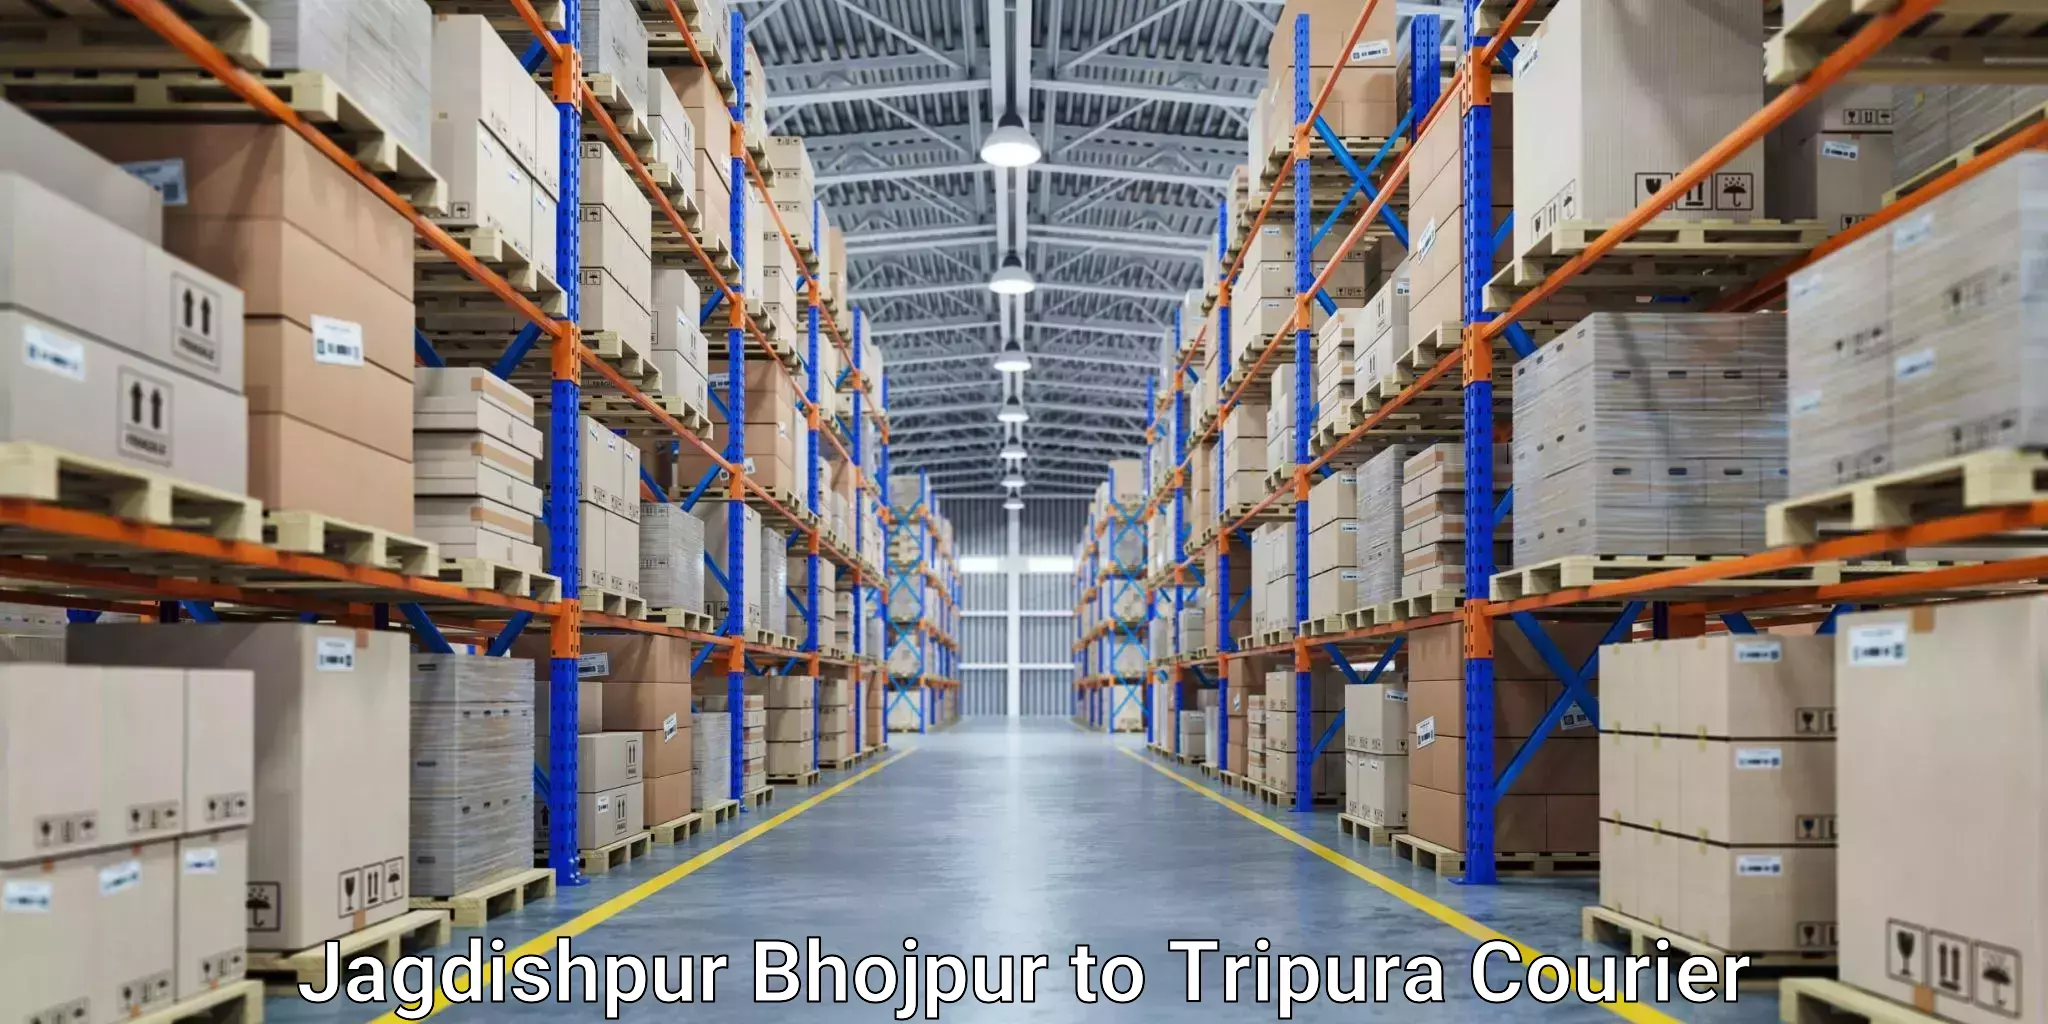 Air courier services Jagdishpur Bhojpur to Tripura